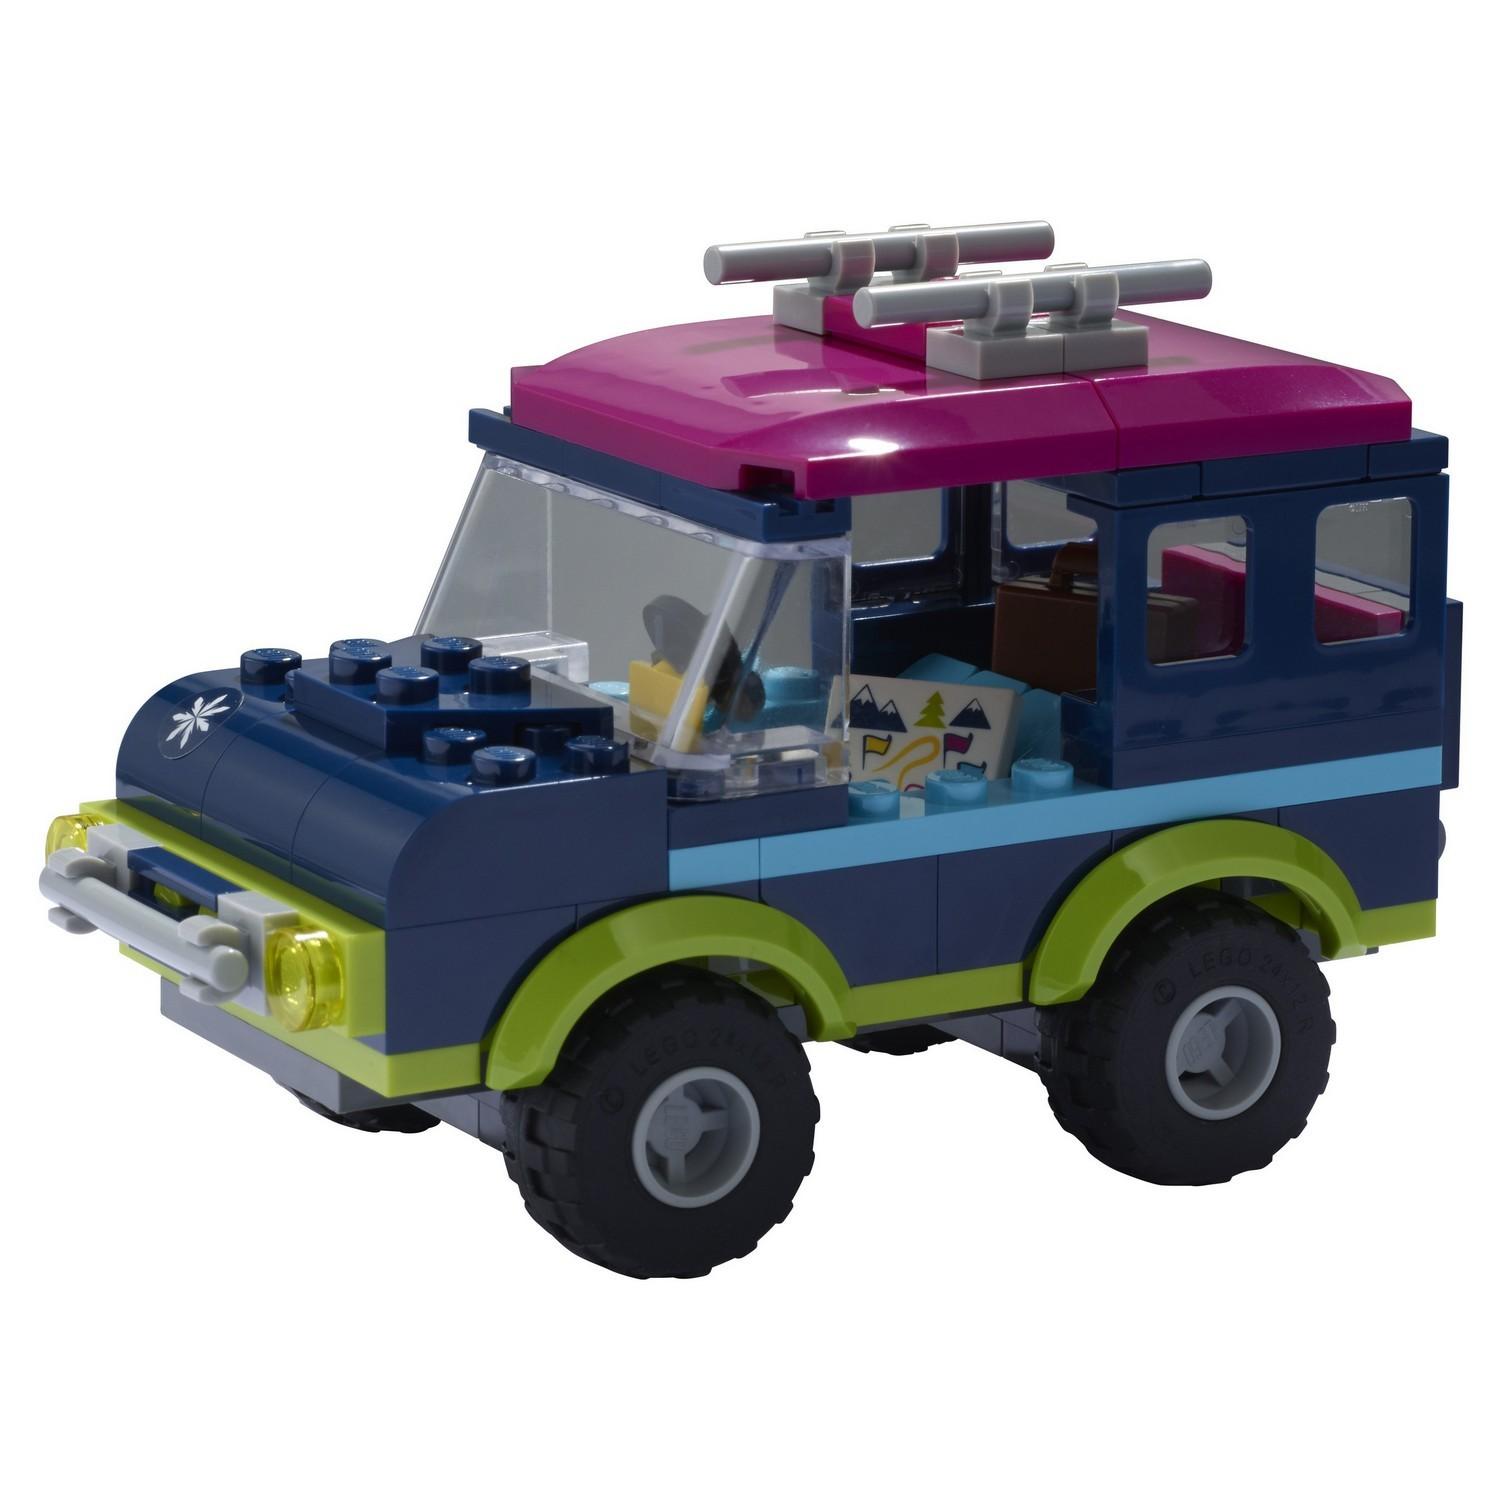 Lego Friends 41321 Горнолыжный курорт: внедорожник